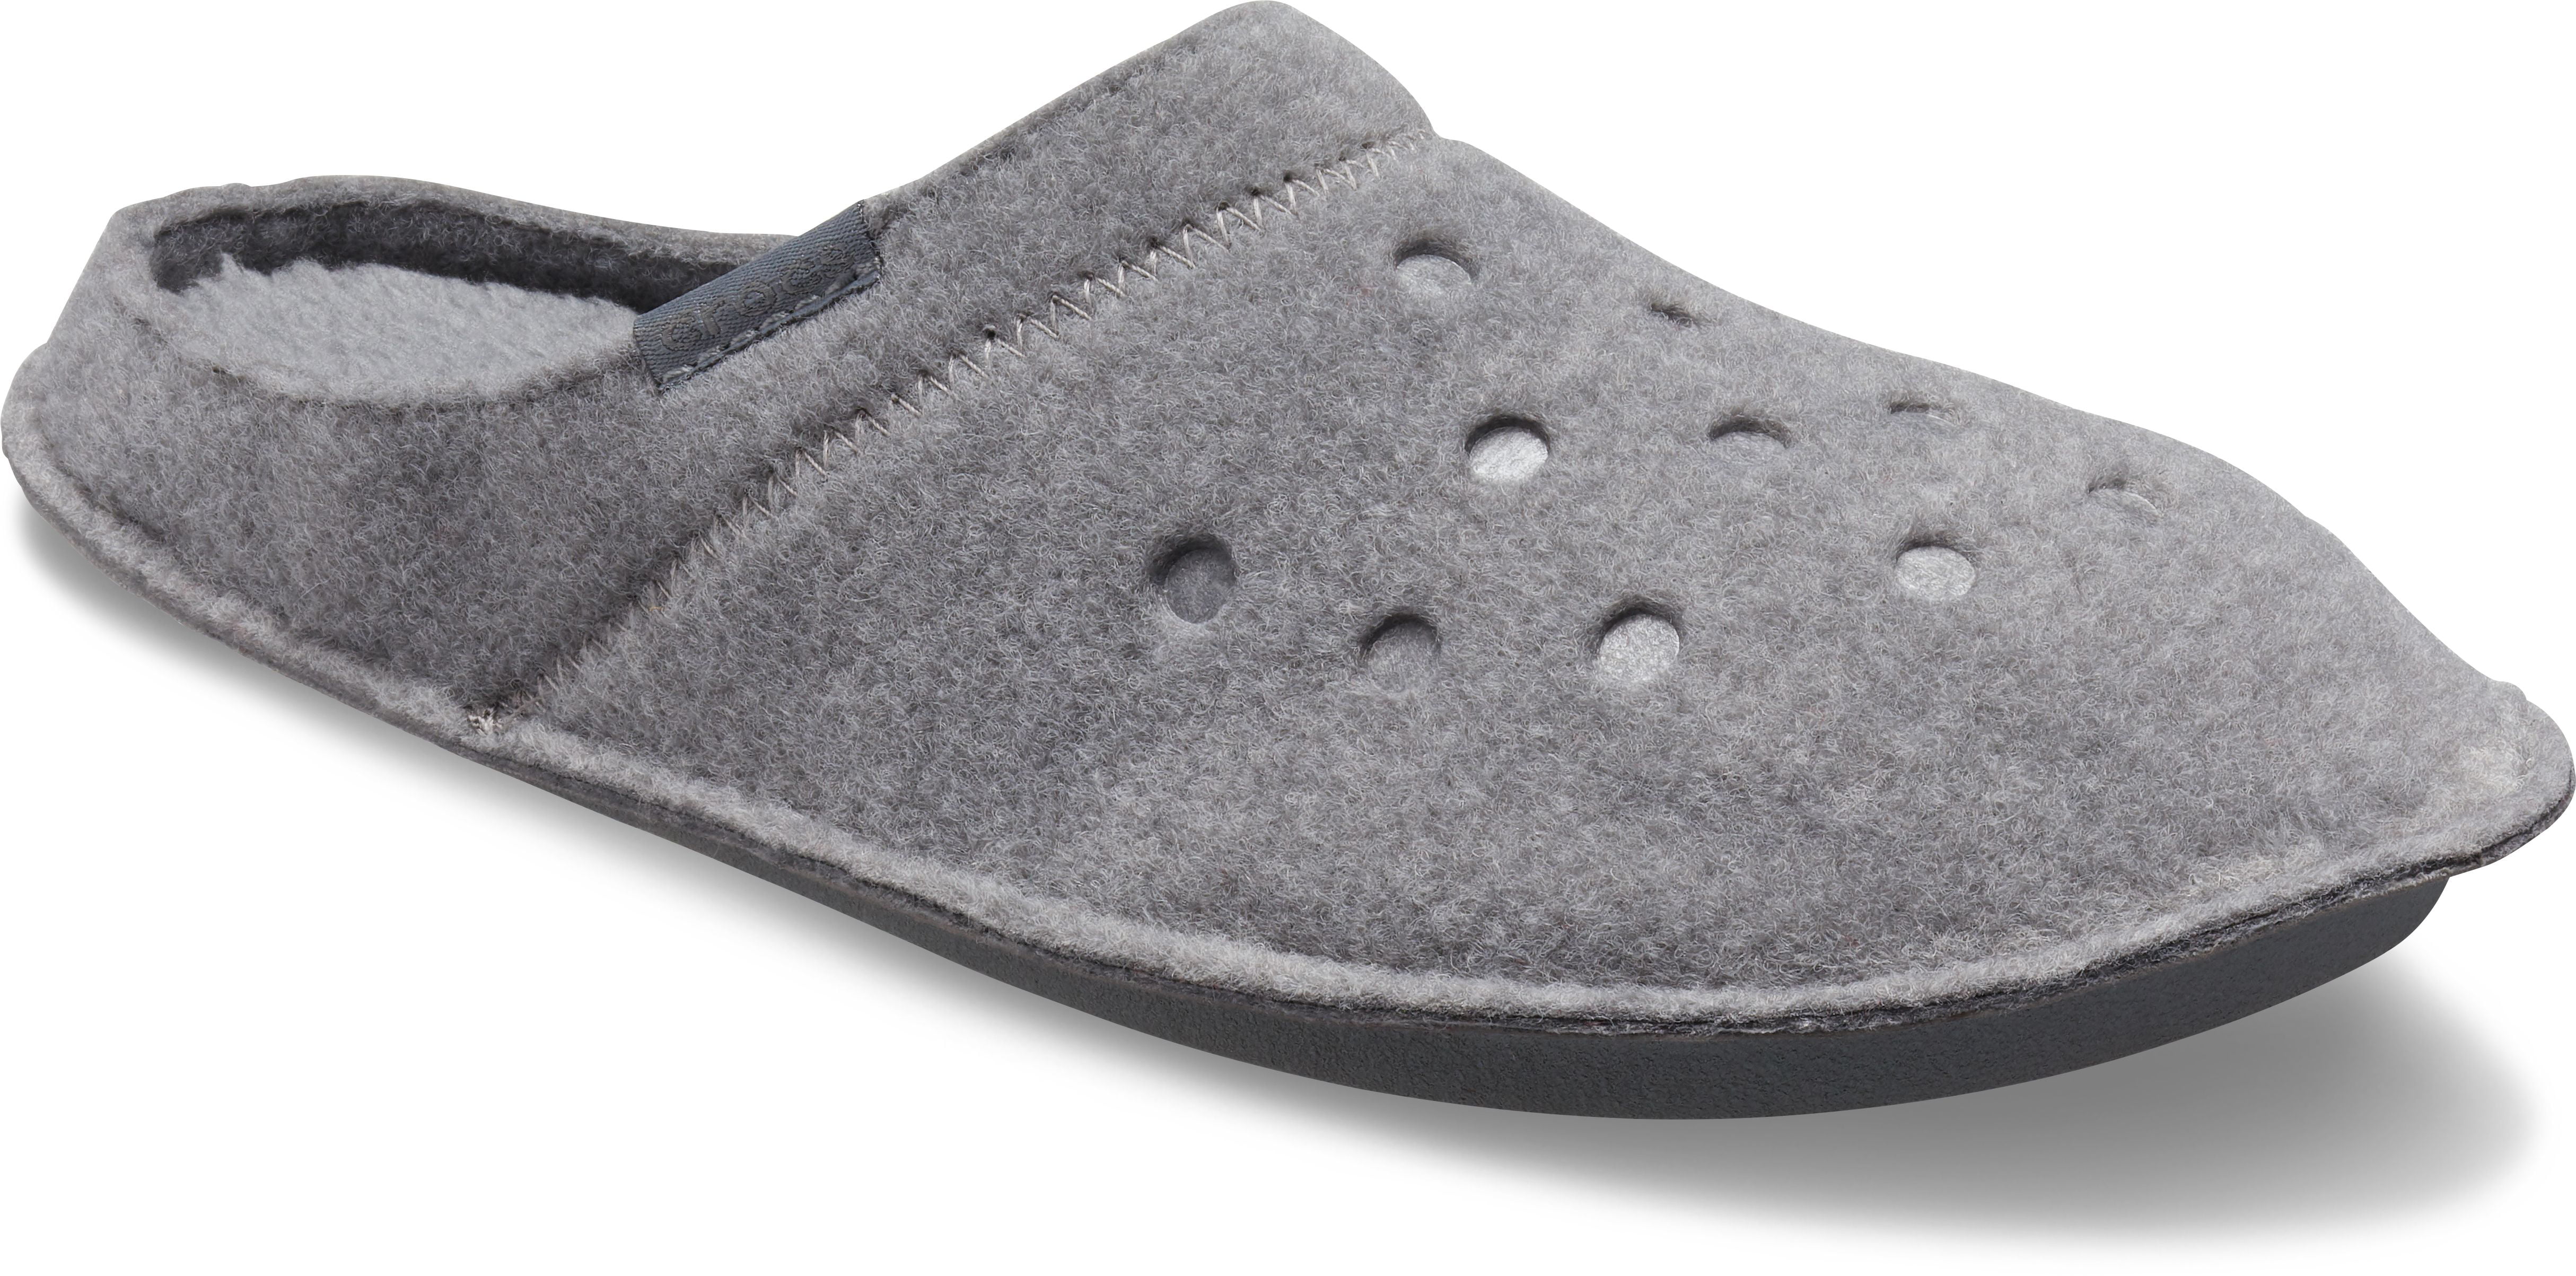 Crocs - Crocs Unisex Classic Comfort Slippers - Walmart.com - Walmart.com